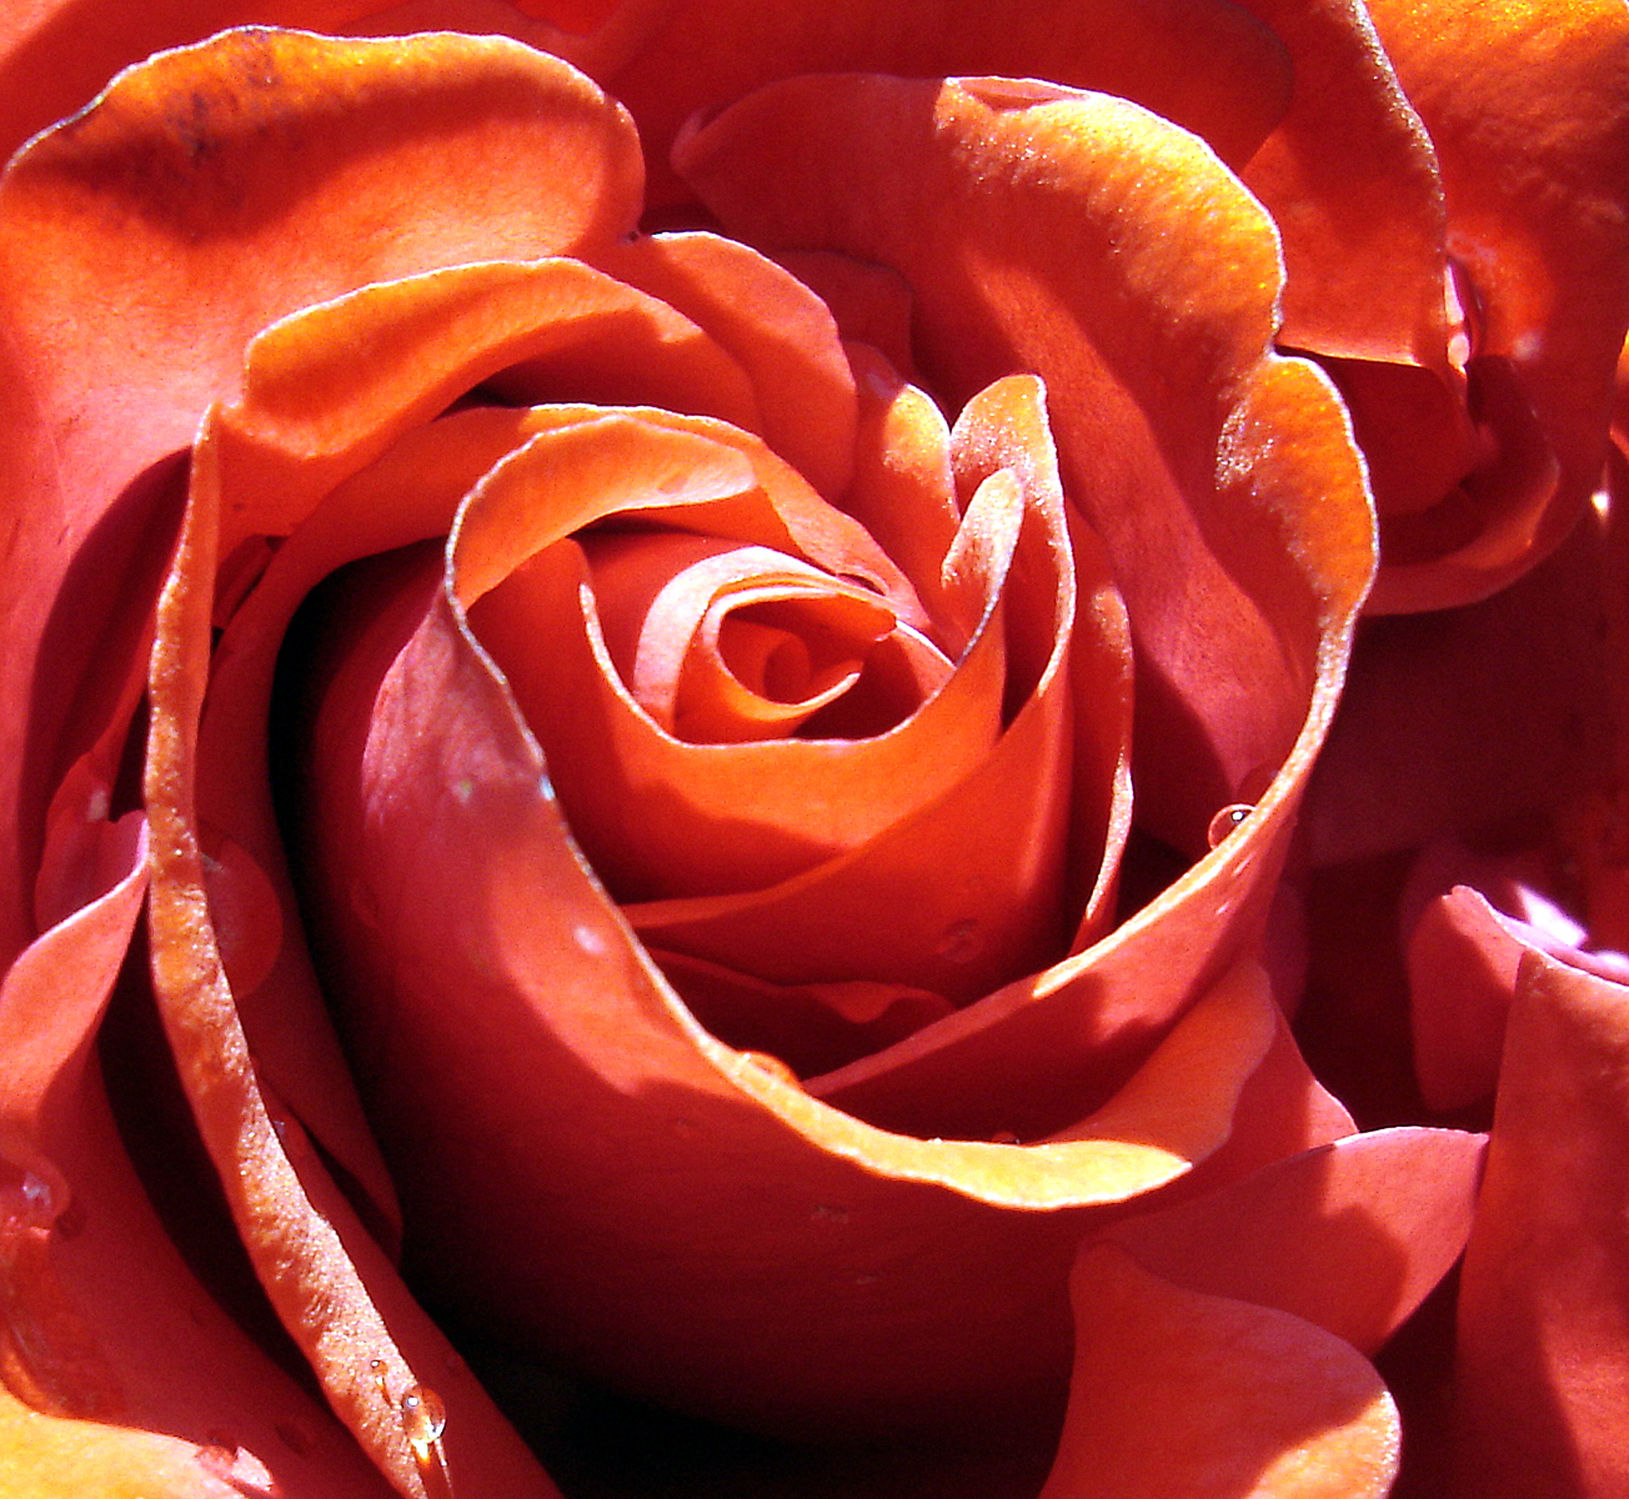 Bild mit Pflanzen, Rosa, Frühling, Rosen, Sommer, Pflanze, Rose, romantik, Schönheit, Blüten, blüte, frühjahr, Liebe